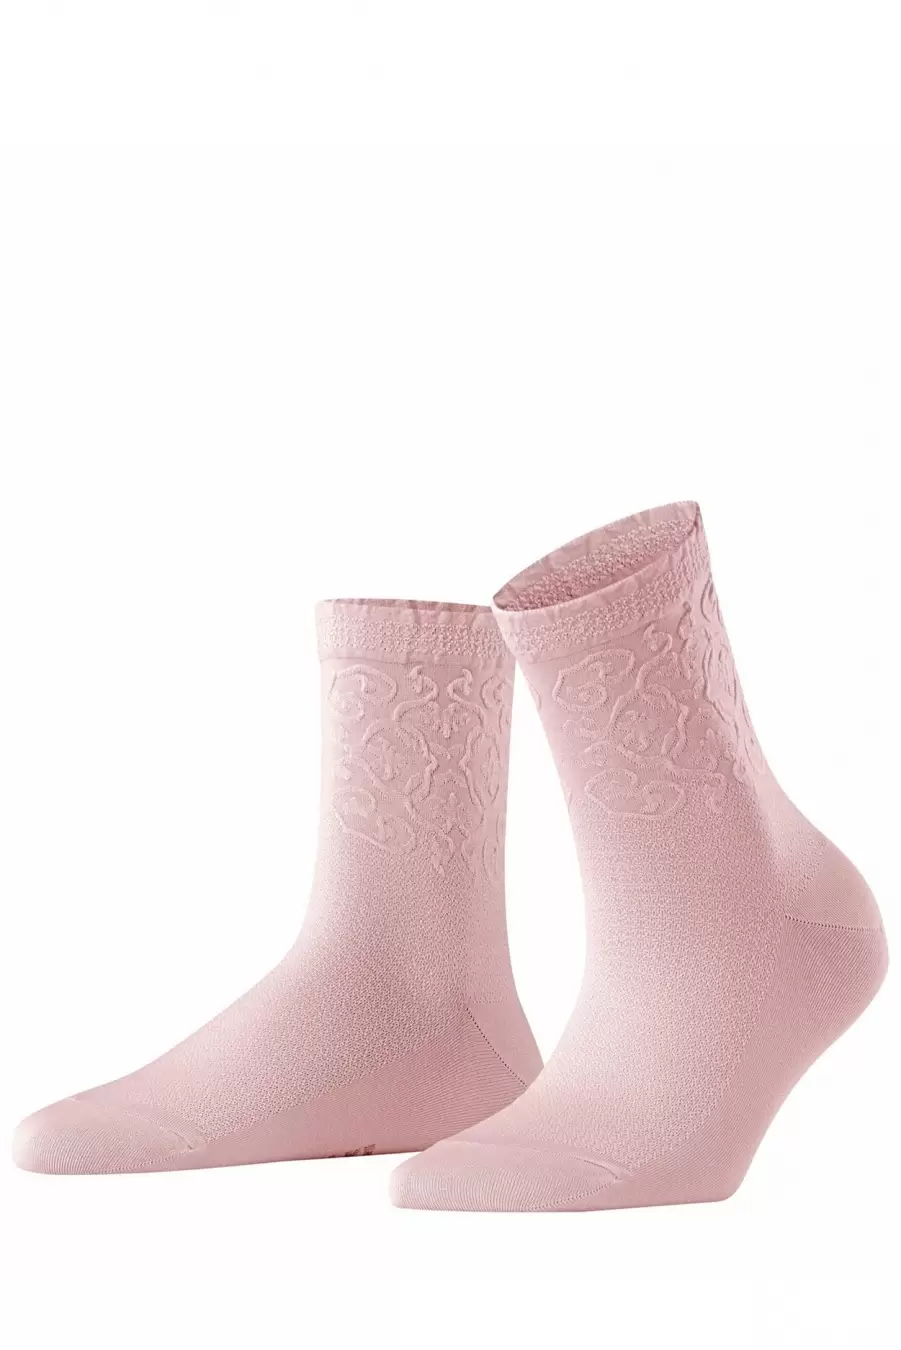 Falke 46349 Renaissance SO, женские носки (изображение 1)